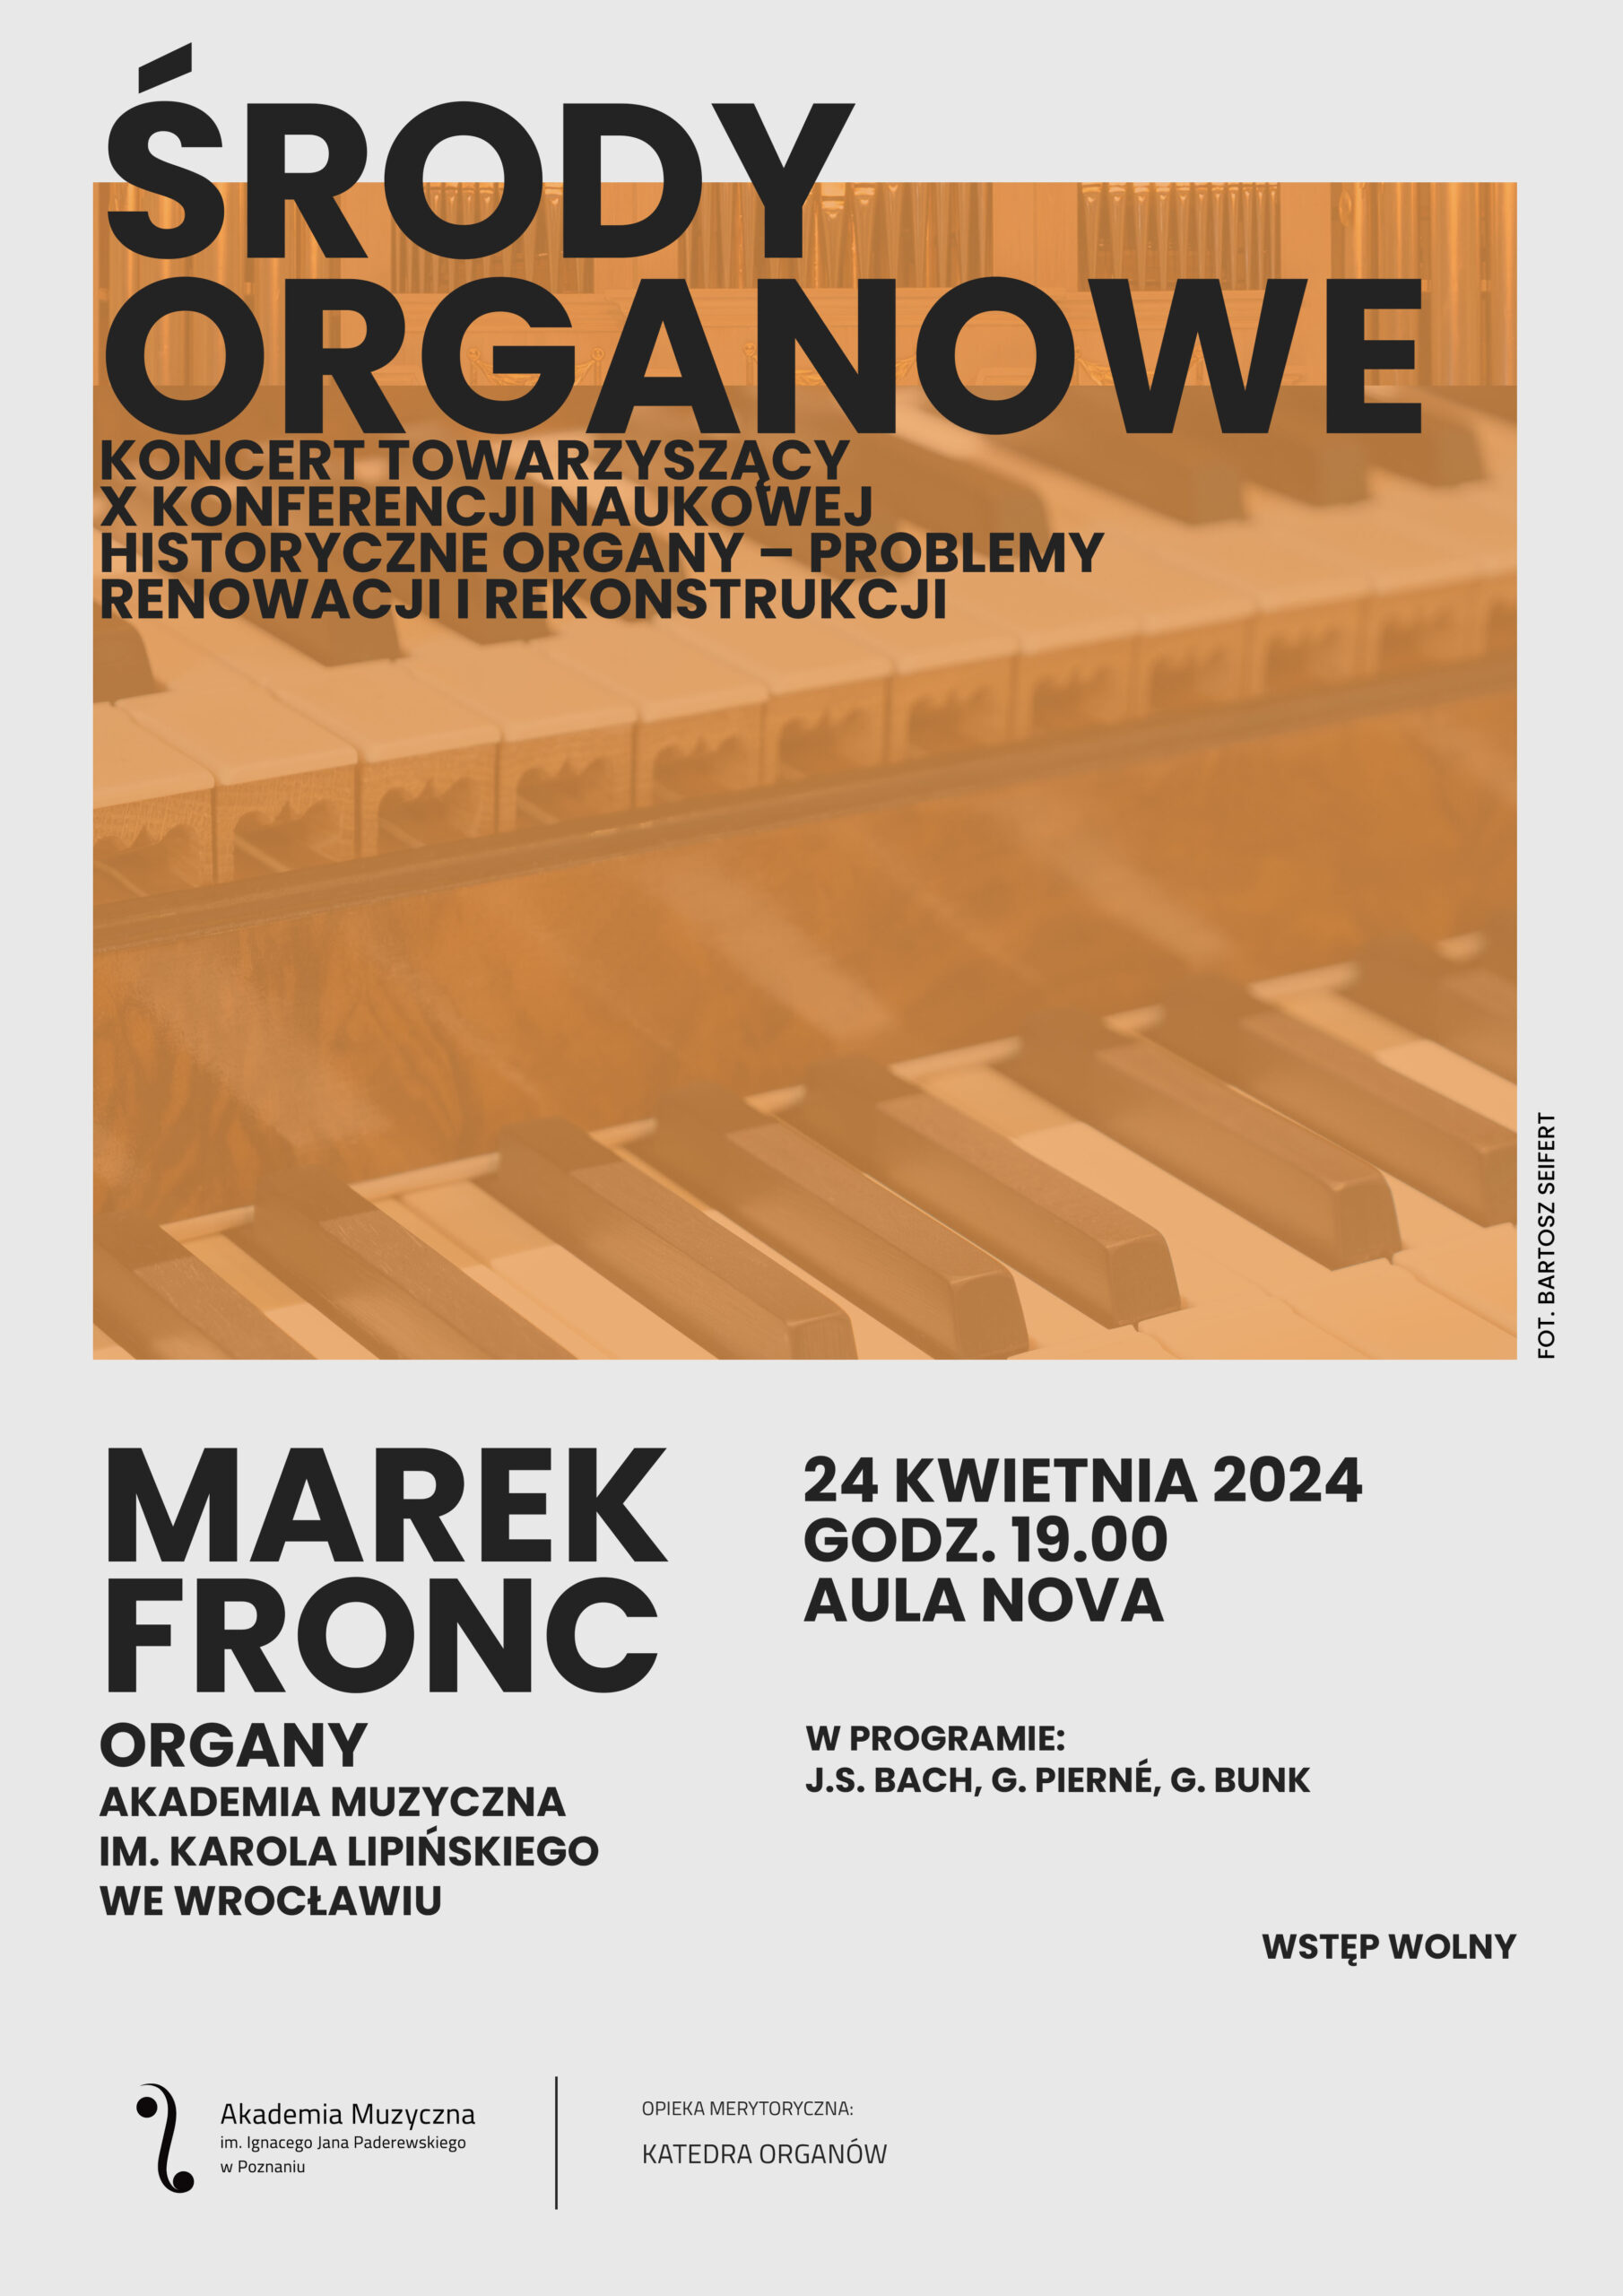 Afisz zawiera informacje na temat recitalu organowego w ramach konferencji w dniu 24 kwietnia 2024